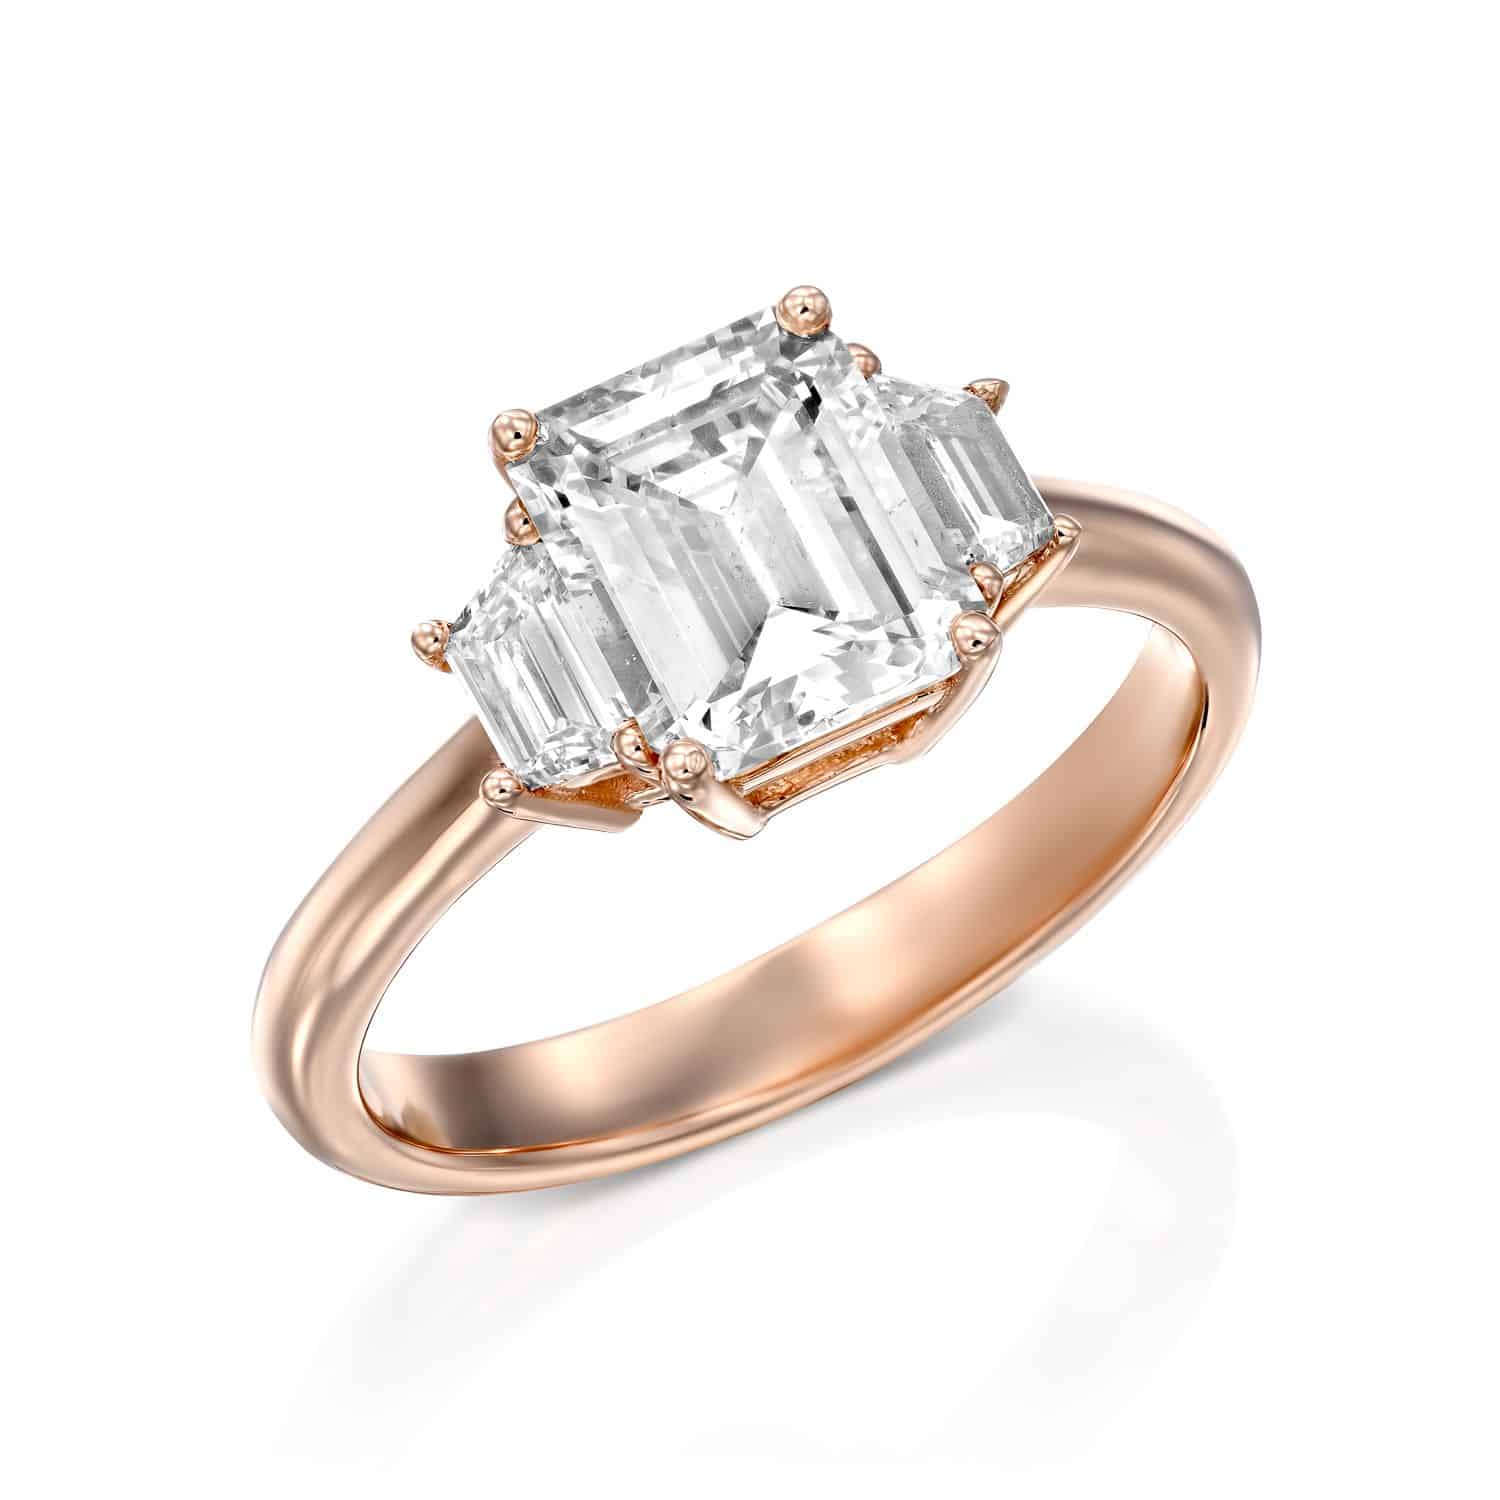 טבעת זהב ורדרד אלגנטית הכוללת יהלום בולט בחיתוך אמרלד ולצידו שני יהלומים קטנים יותר, משובצים אנכית.